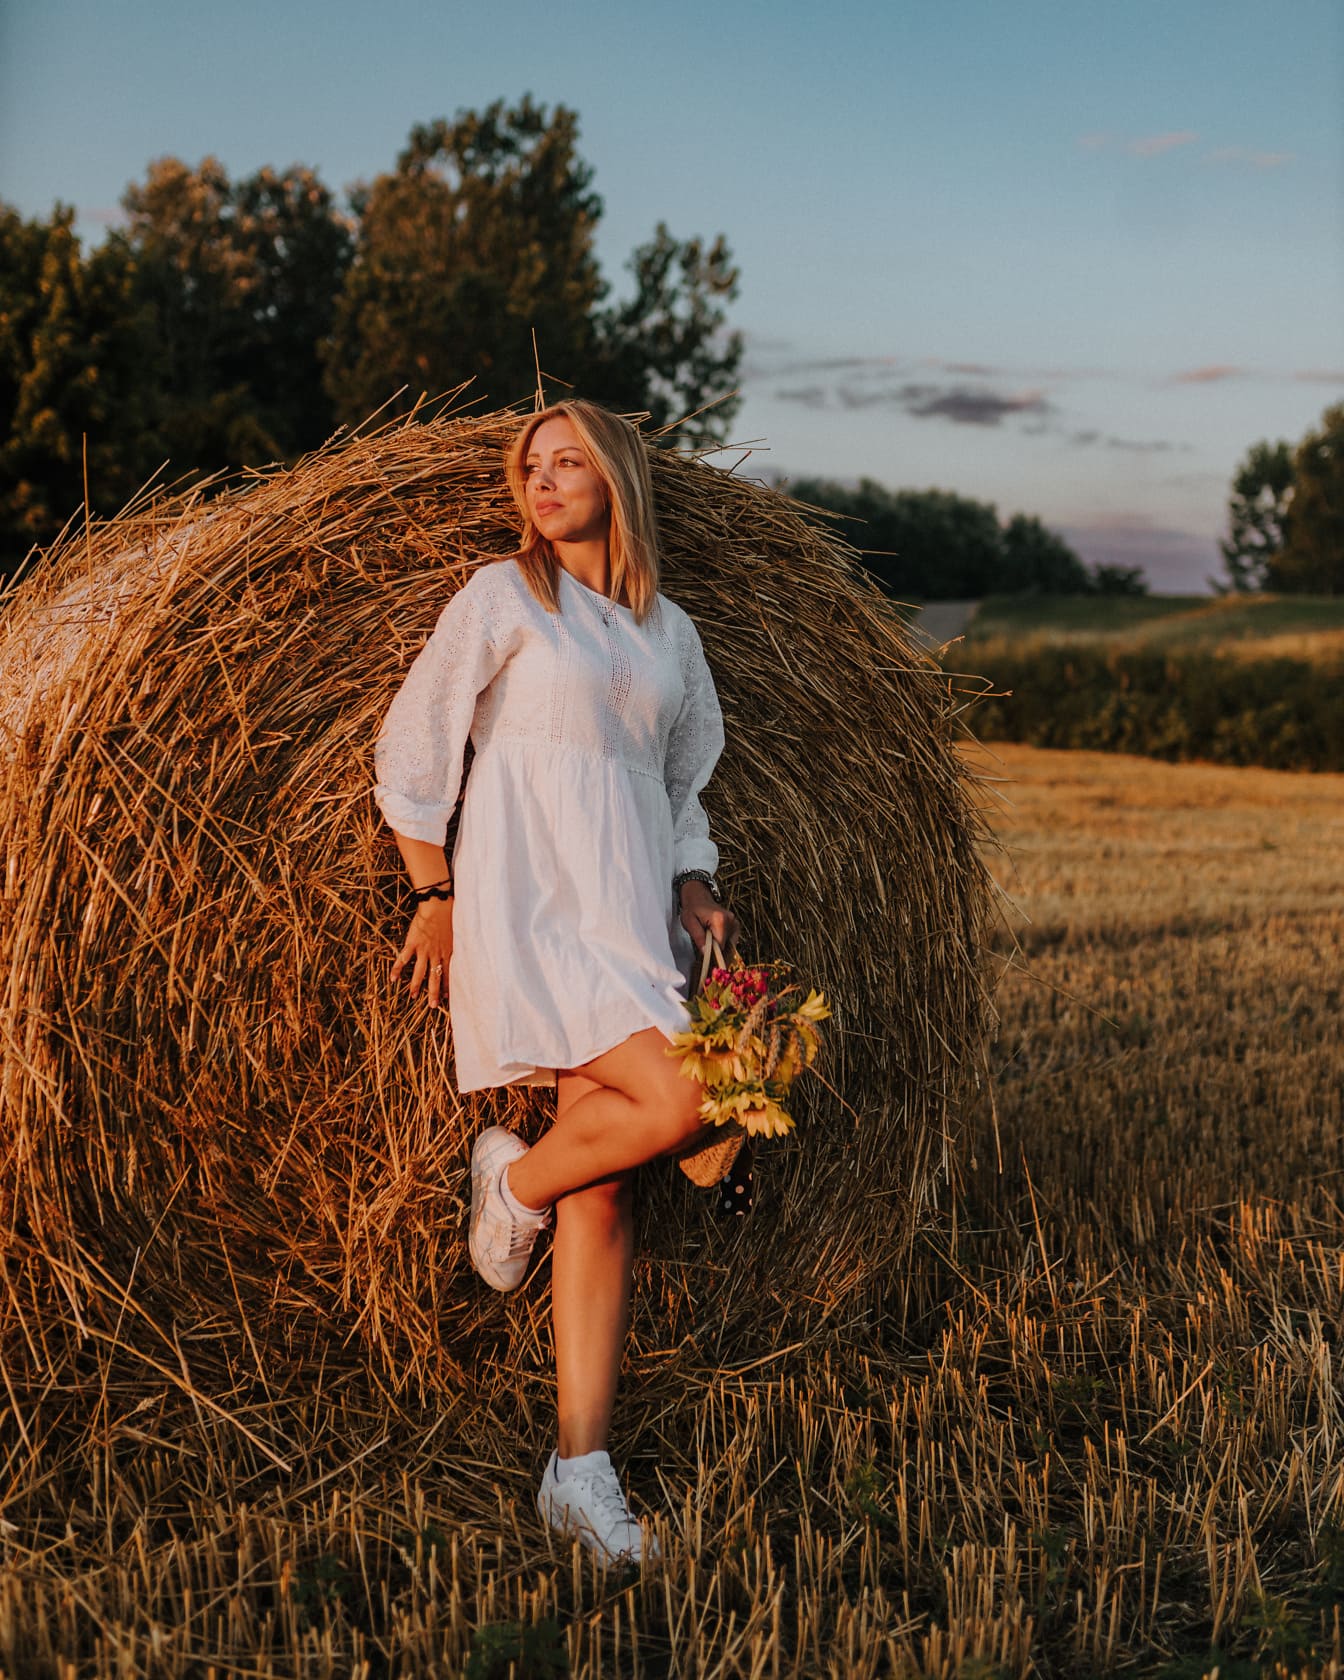 Venkovská mladá žena v bílém lidovém oděvu opírající se o balík sena v pšeničném poli